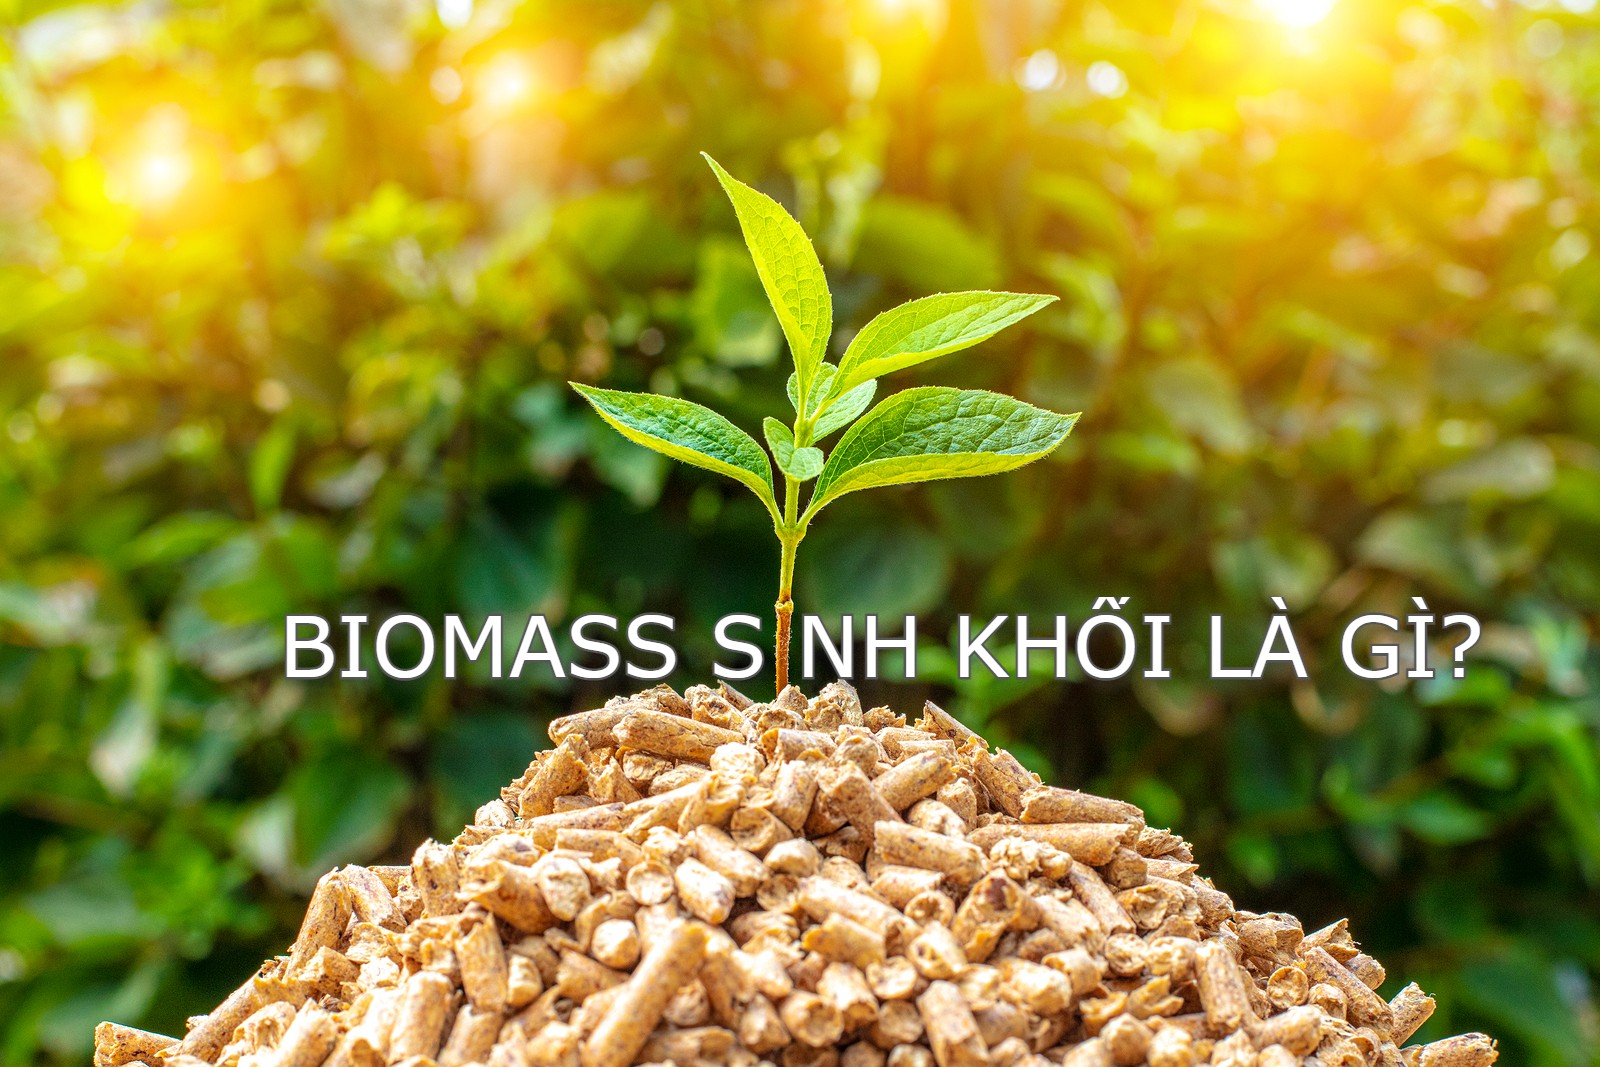 biomass là gì